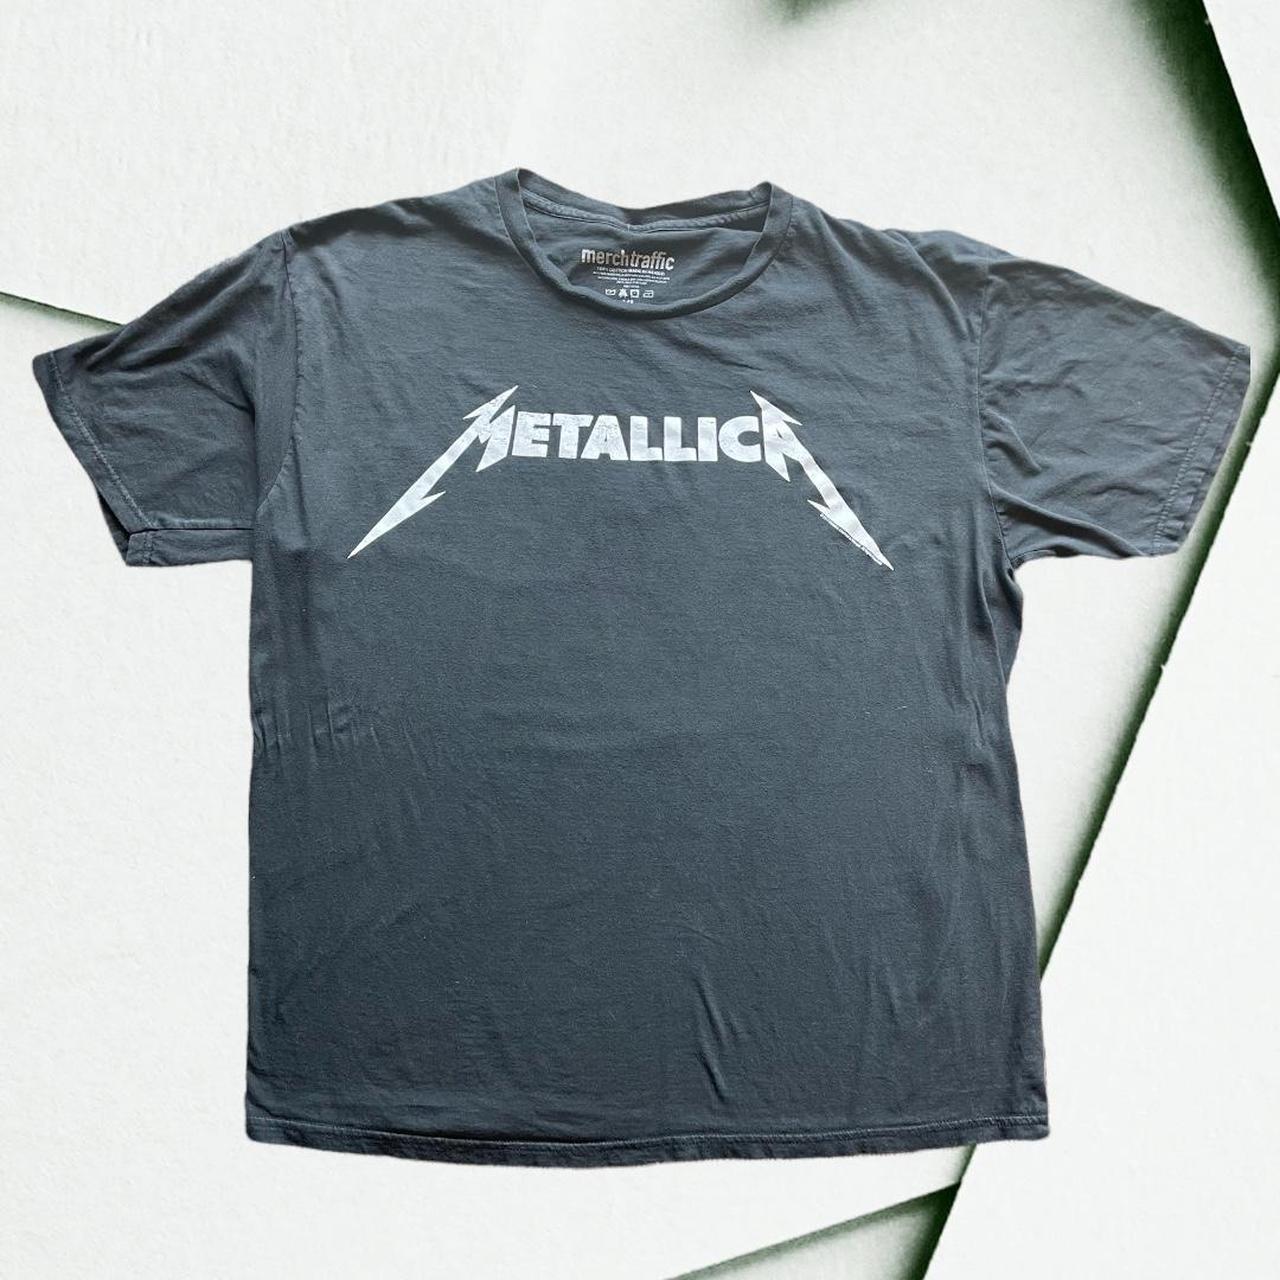 Metallica t shirt in great condition! - Depop